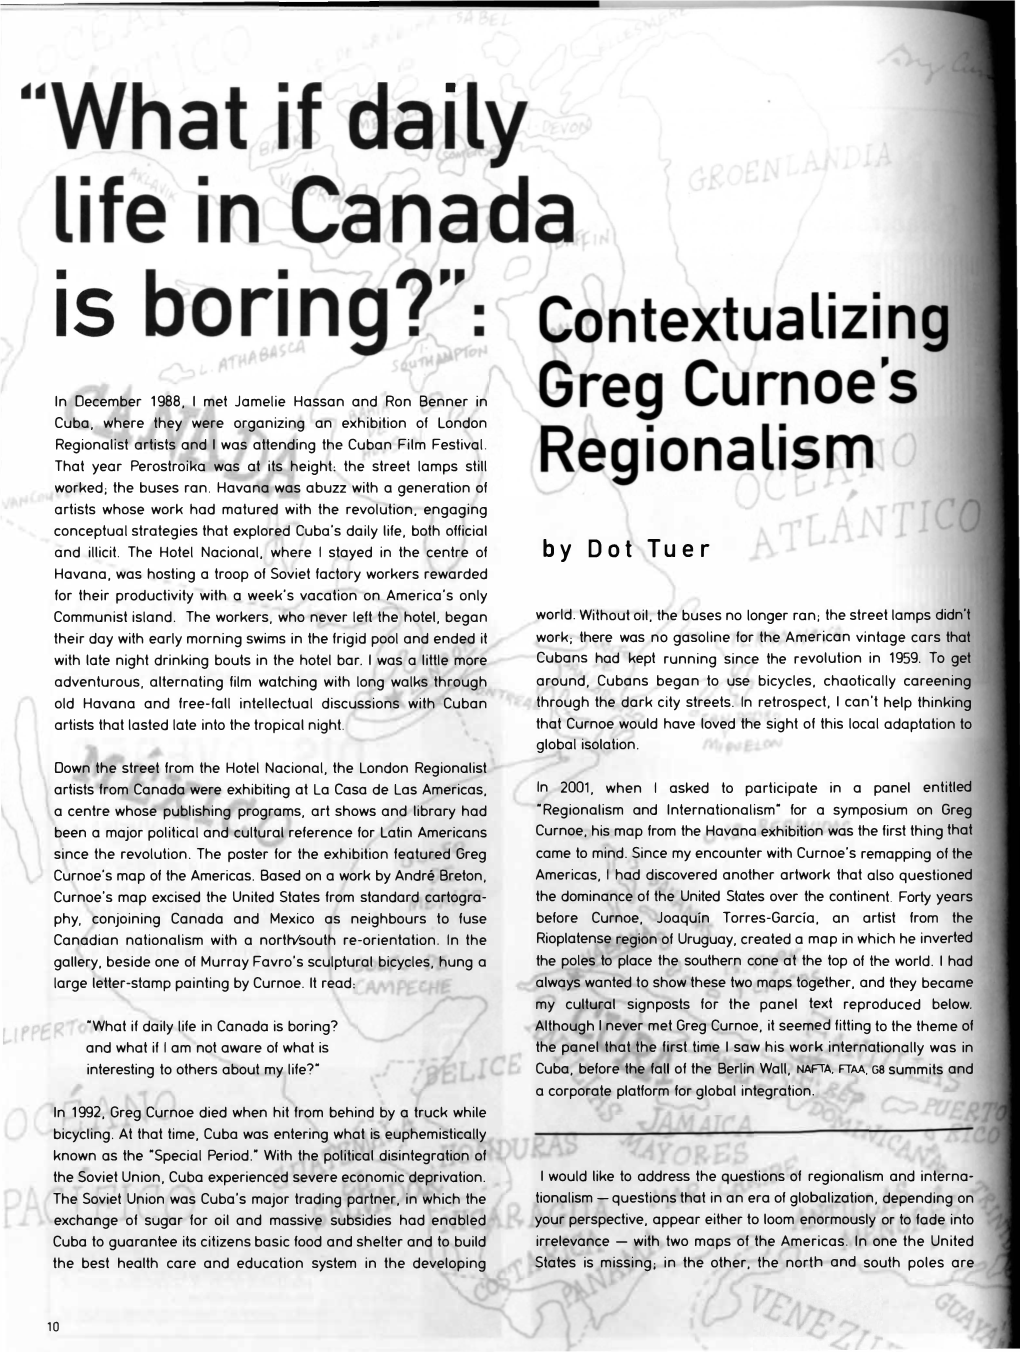 Contextualizing Greg Curnoe's Regionalism